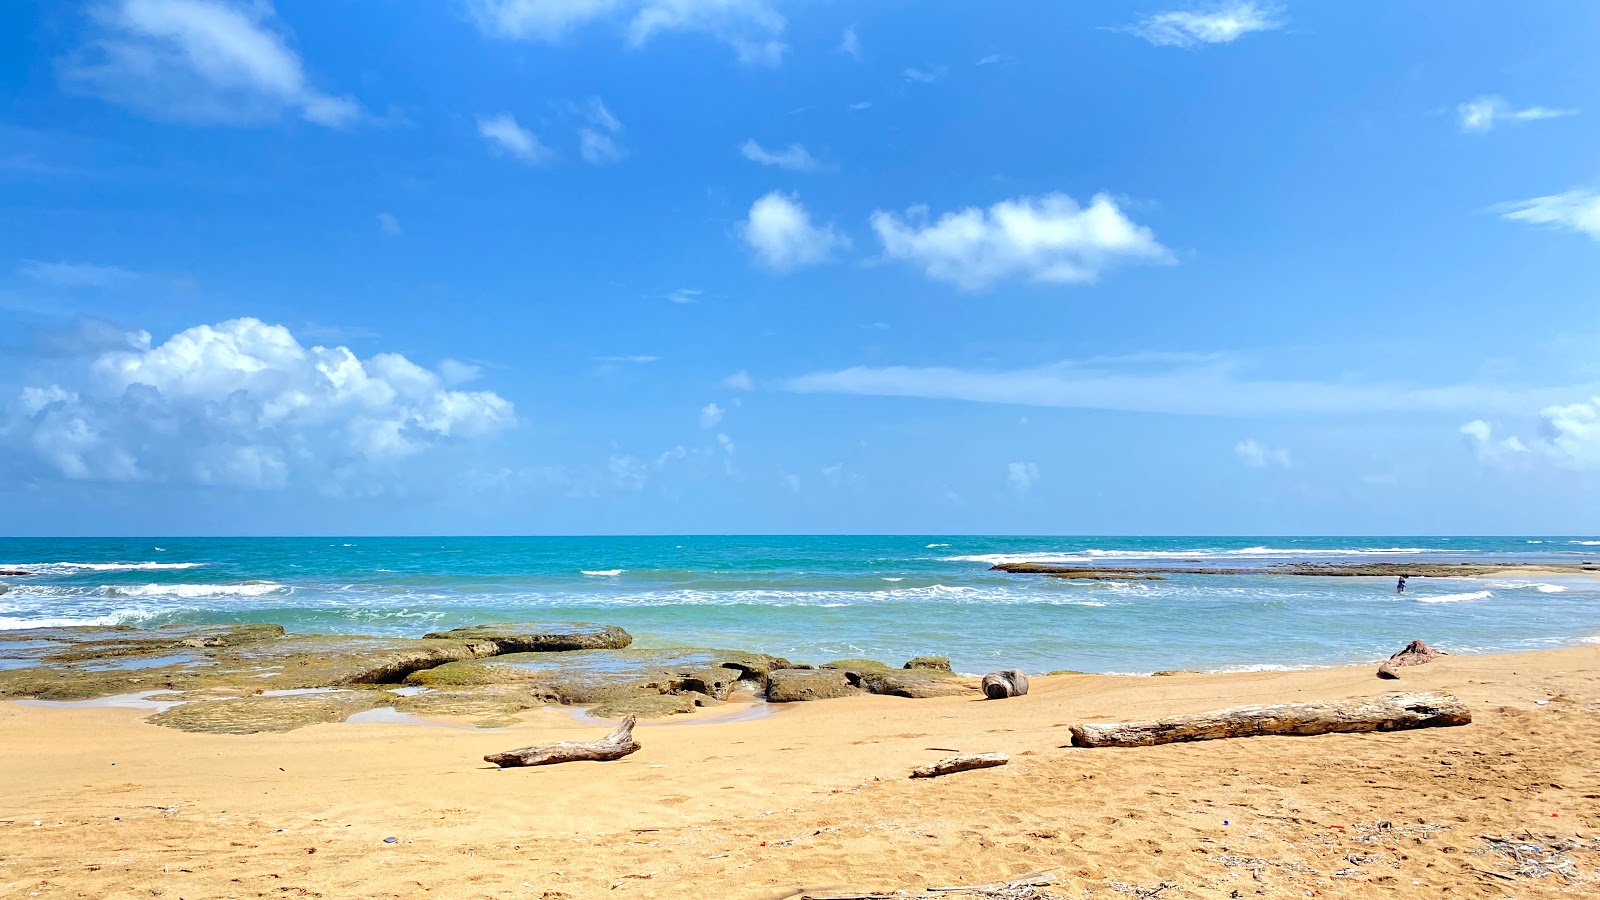 Zdjęcie Palenque Beach - popularne miejsce wśród znawców relaksu